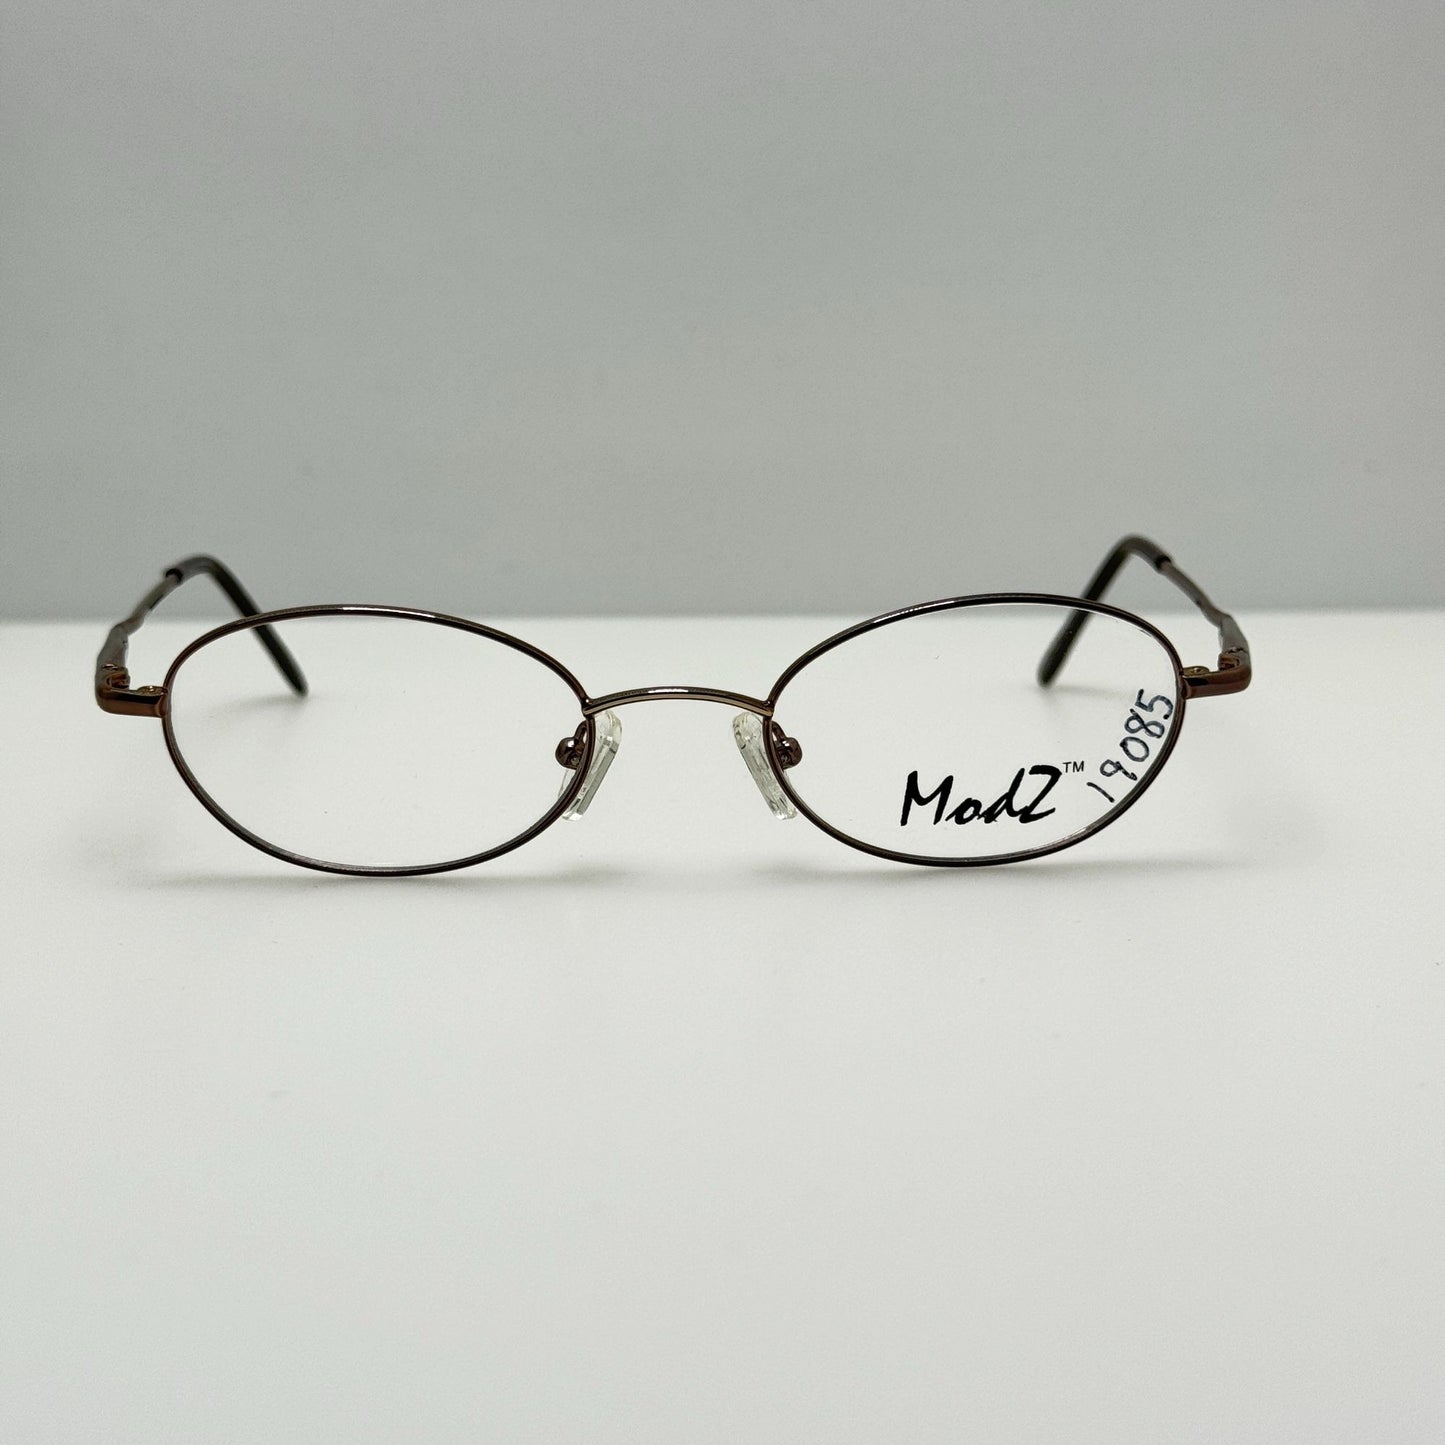 Modern Modz Eyeglasses Eye Glasses Frames Cancun Brown 48-19-140